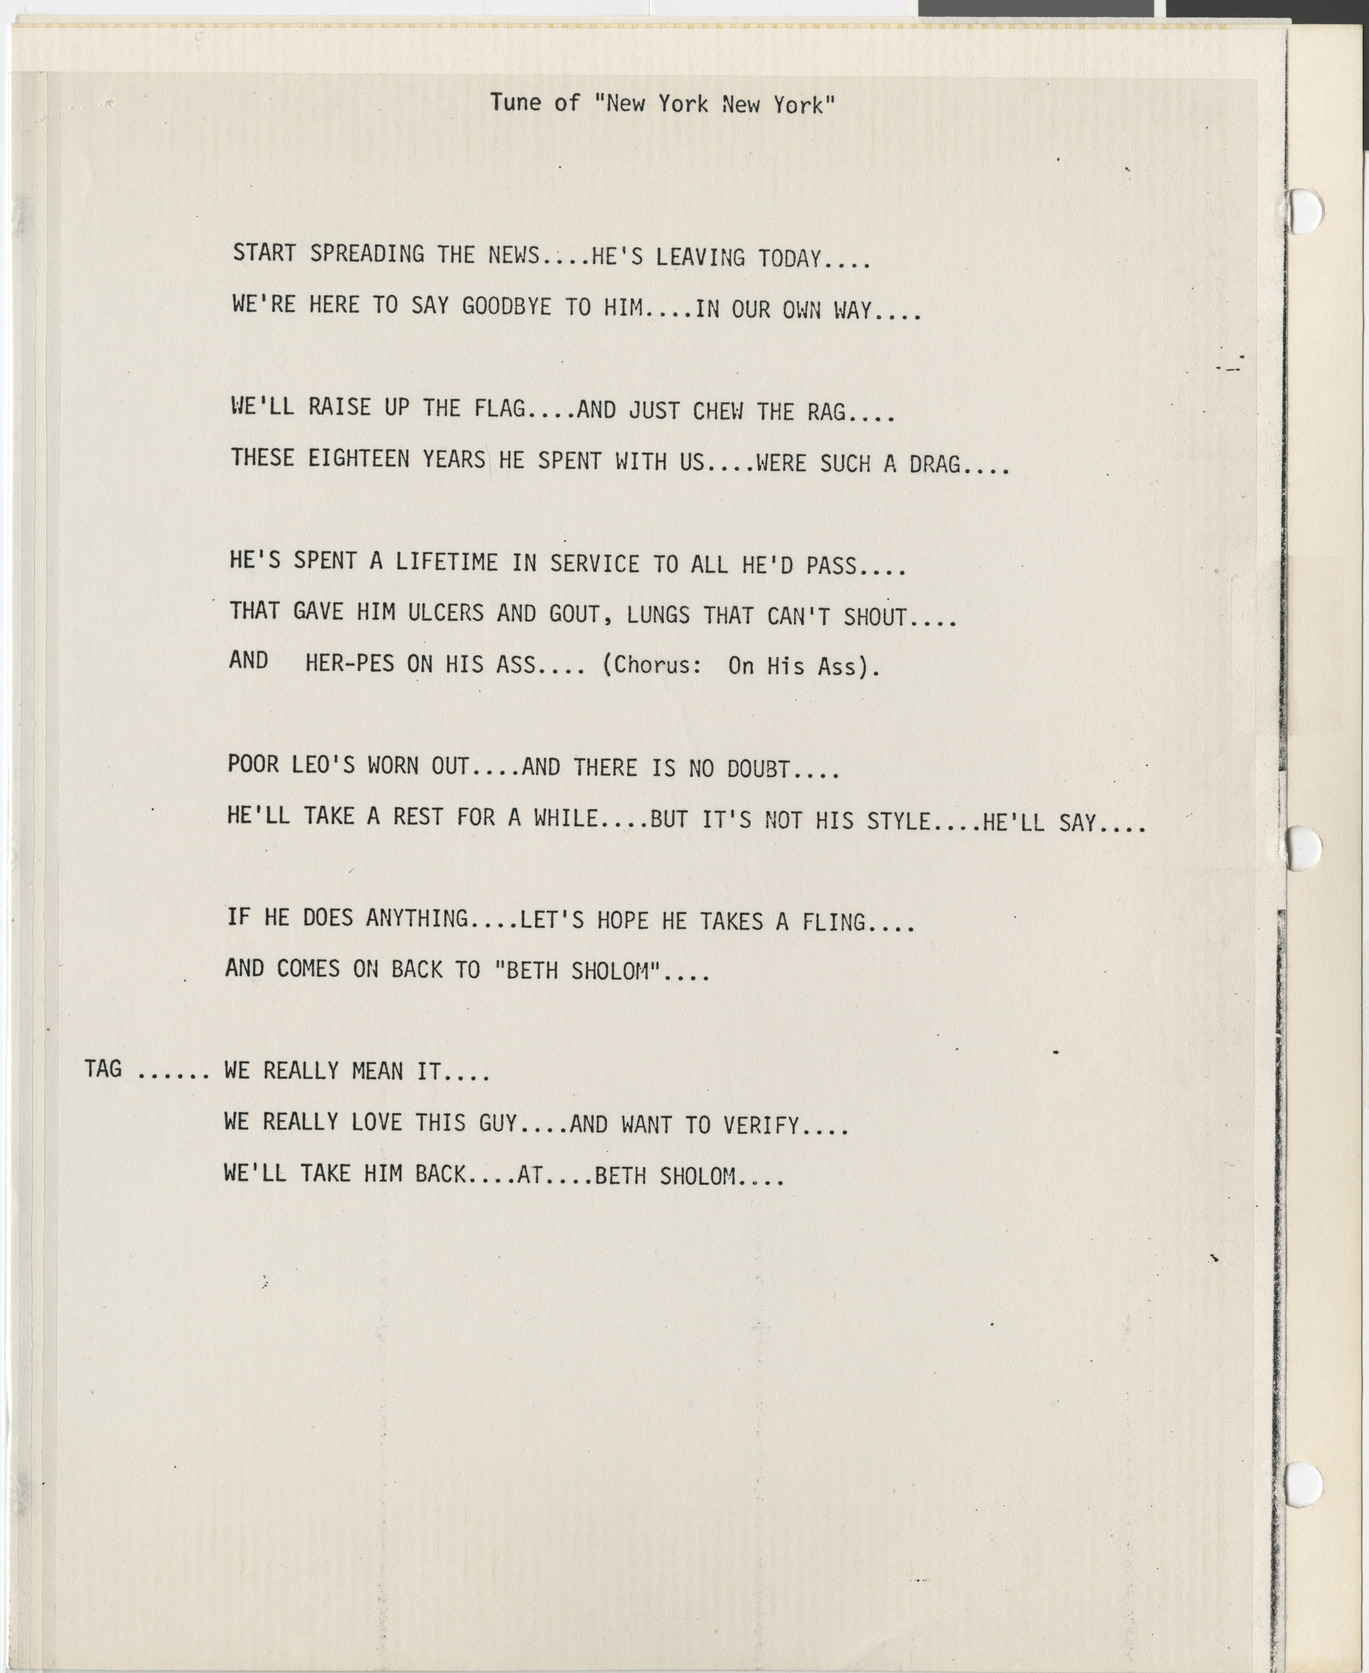 Lyrics written for Leo Wilner's retirement